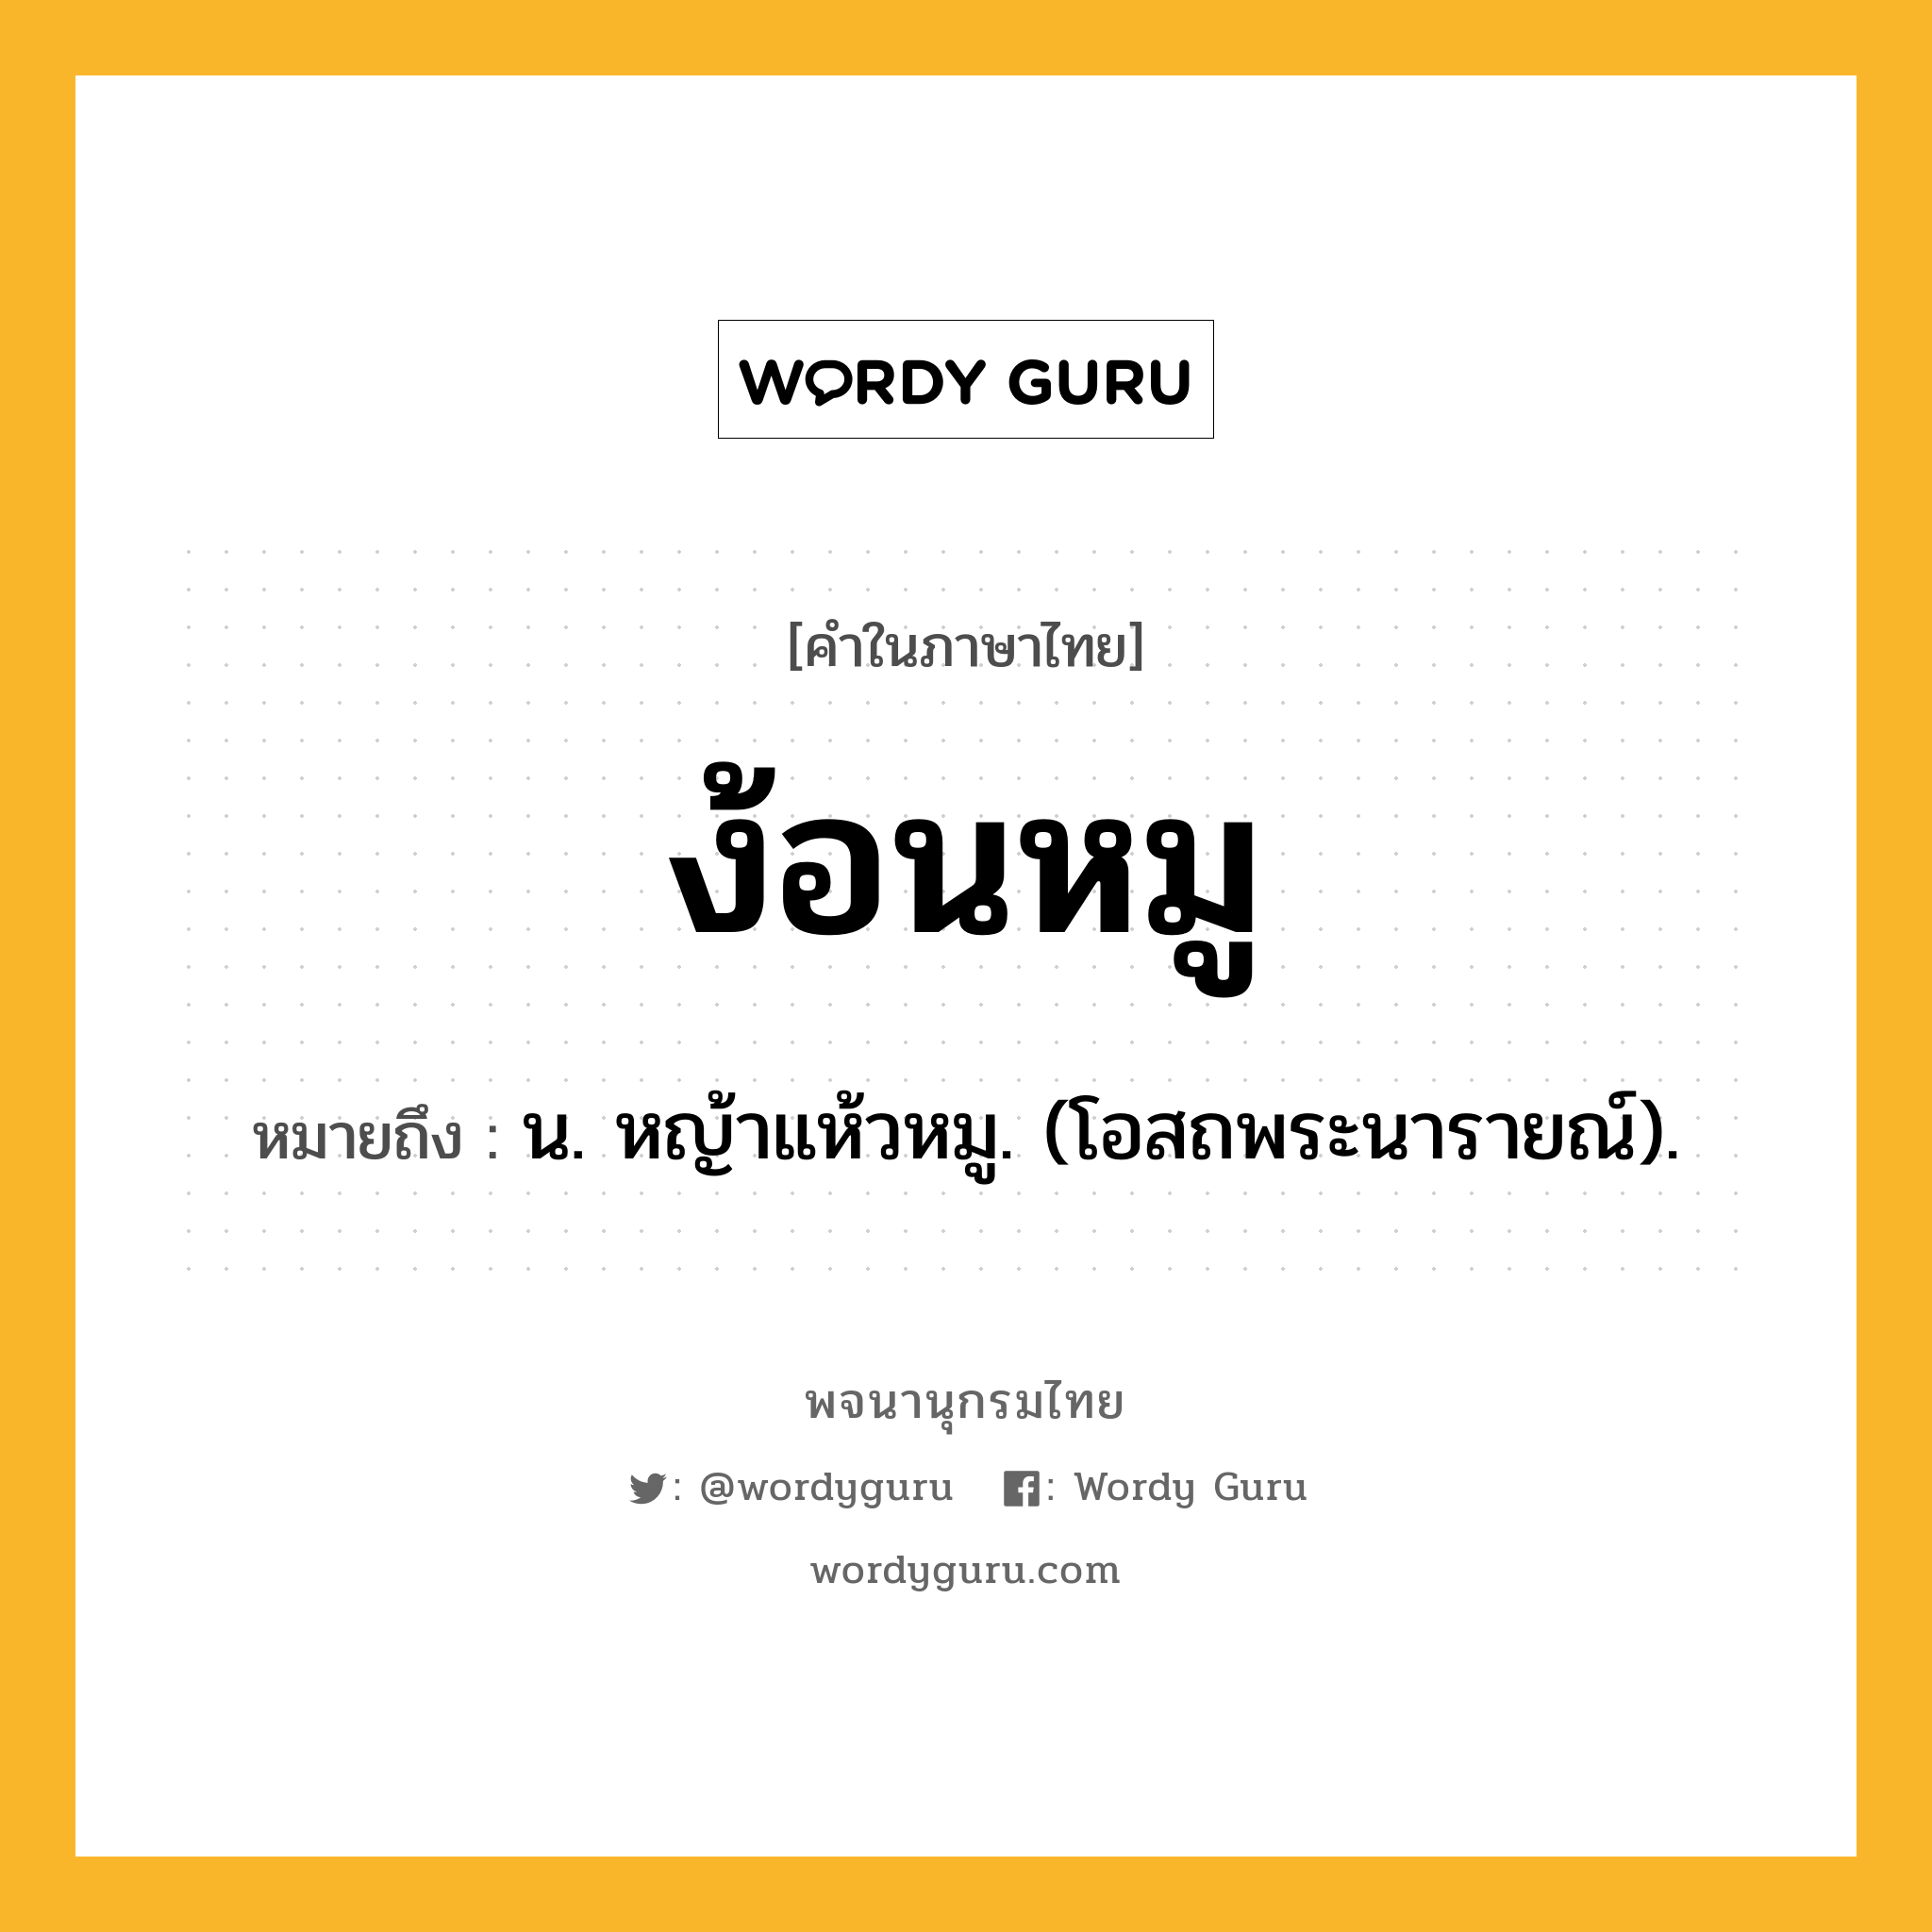 ง้อนหมู หมายถึงอะไร?, คำในภาษาไทย ง้อนหมู หมายถึง น. หญ้าแห้วหมู. (โอสถพระนารายณ์).